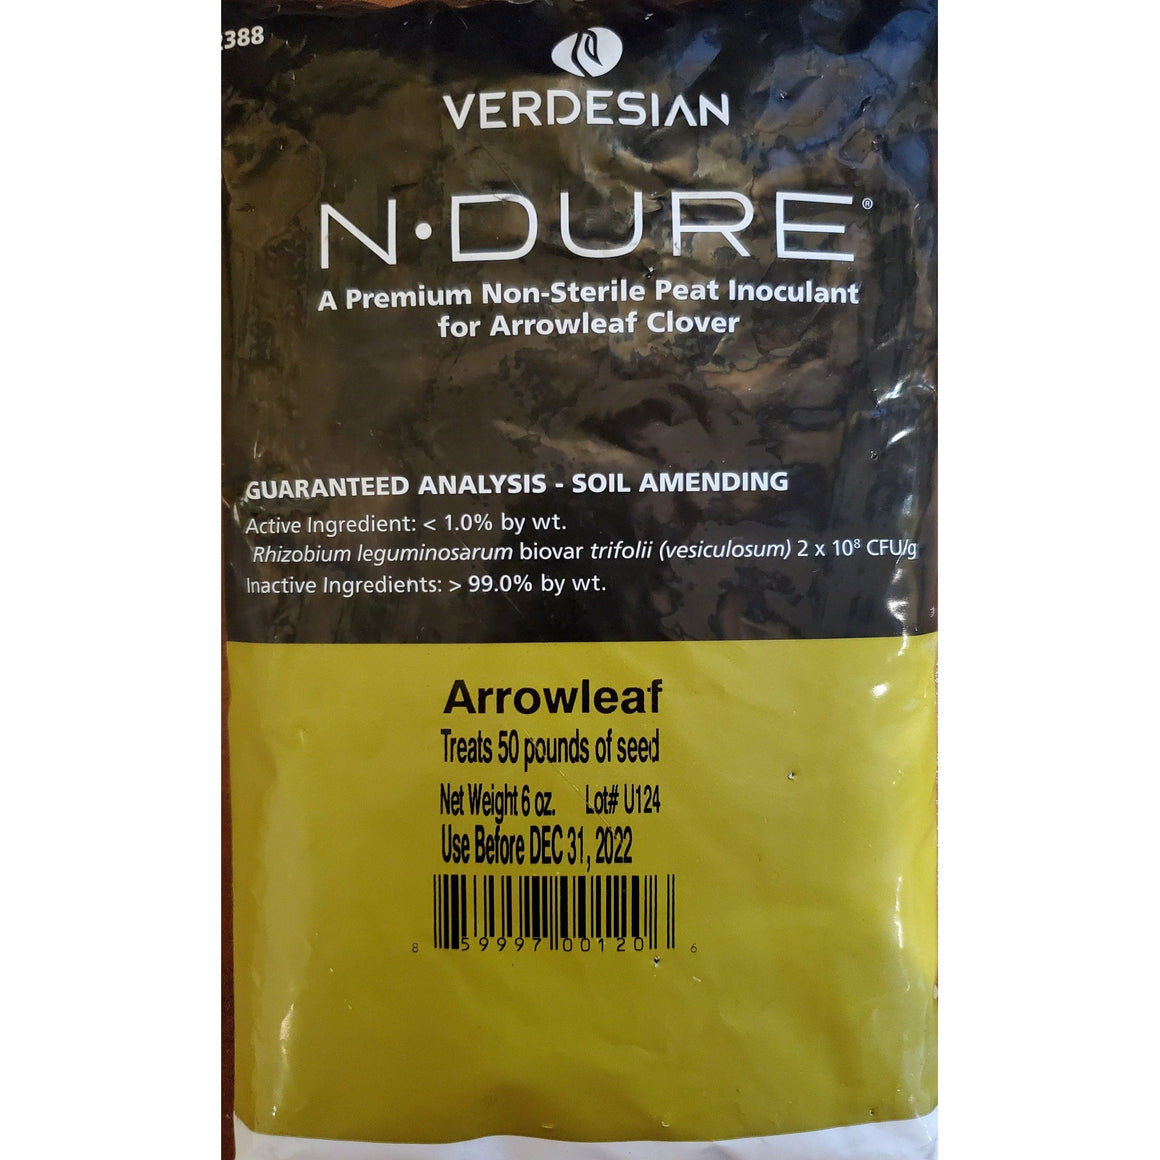 N-Dure Arrowleaf Clover Inoculant (Organic)  - 6 Oz. - Seed World